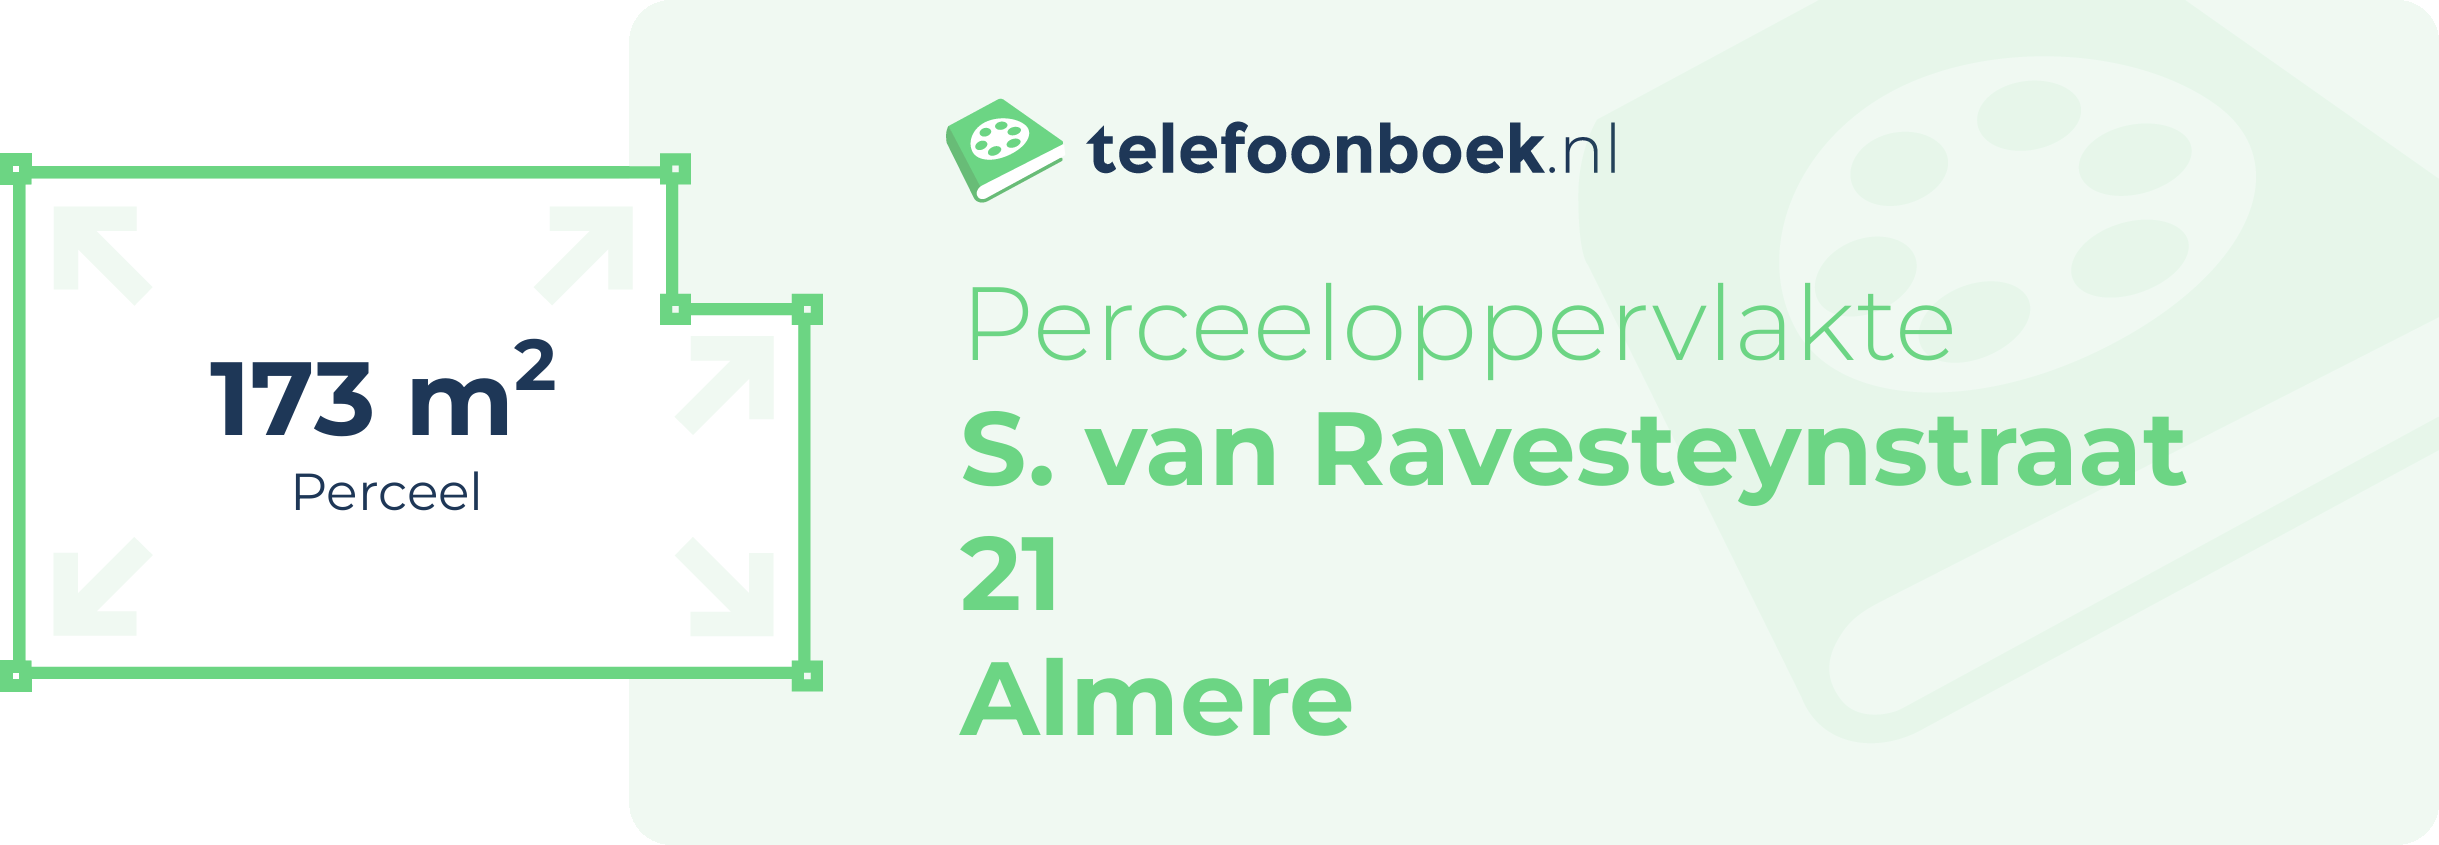 Perceeloppervlakte S. Van Ravesteynstraat 21 Almere